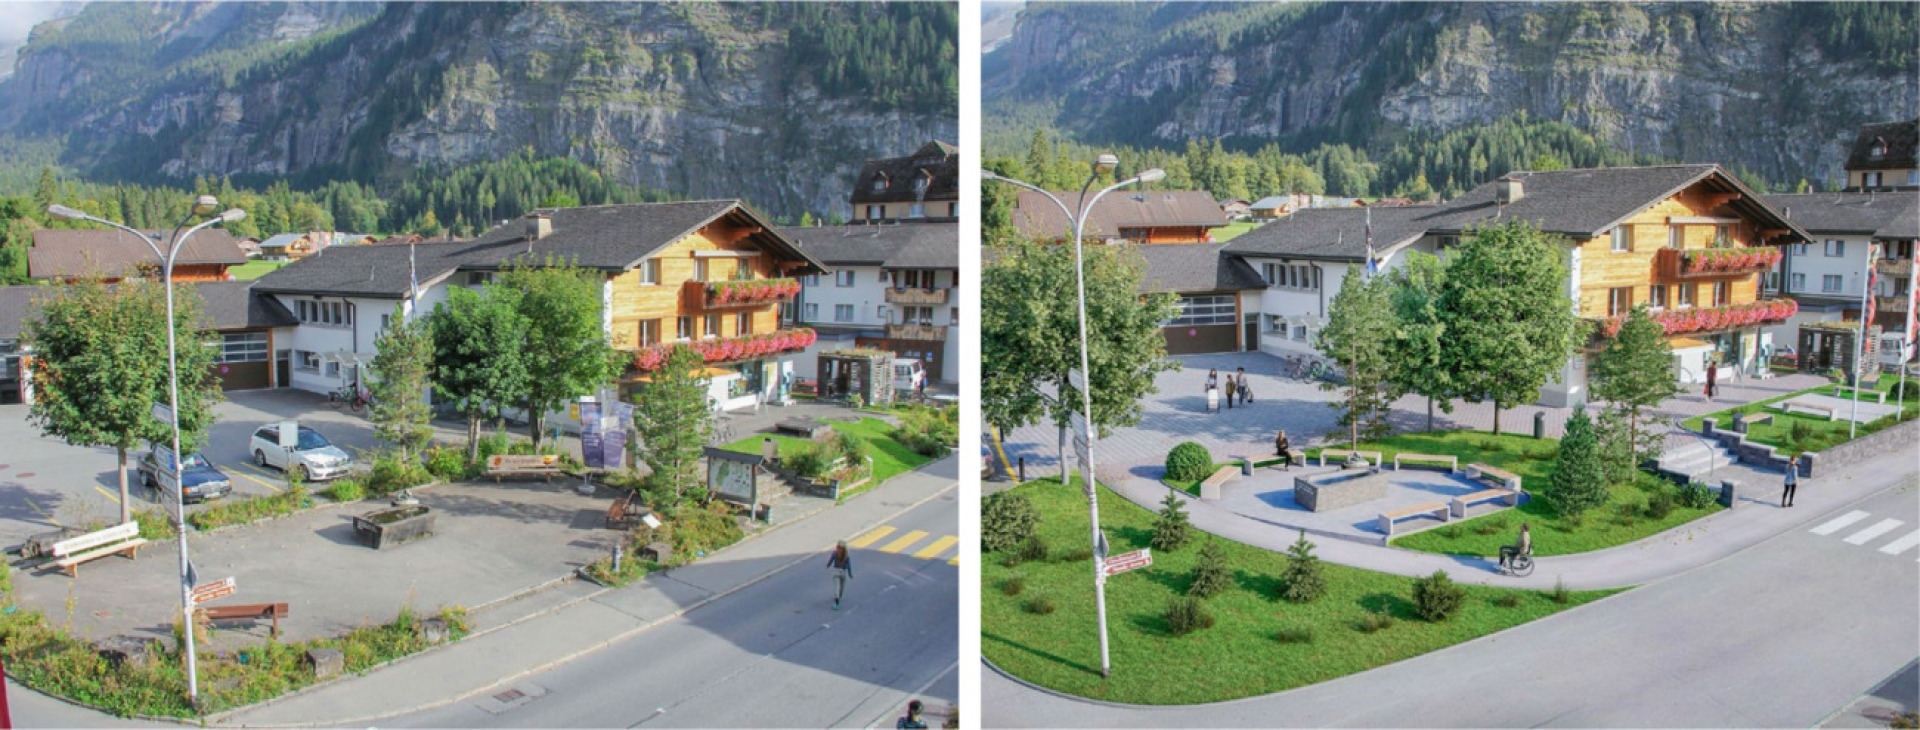 Links der heutige Gemeindehausplatz, rechts die mögliche Neugestaltung BILD UND VISUALISIERUNG: PRÄSENTATION DER GEMEINDE KANDERSTEG